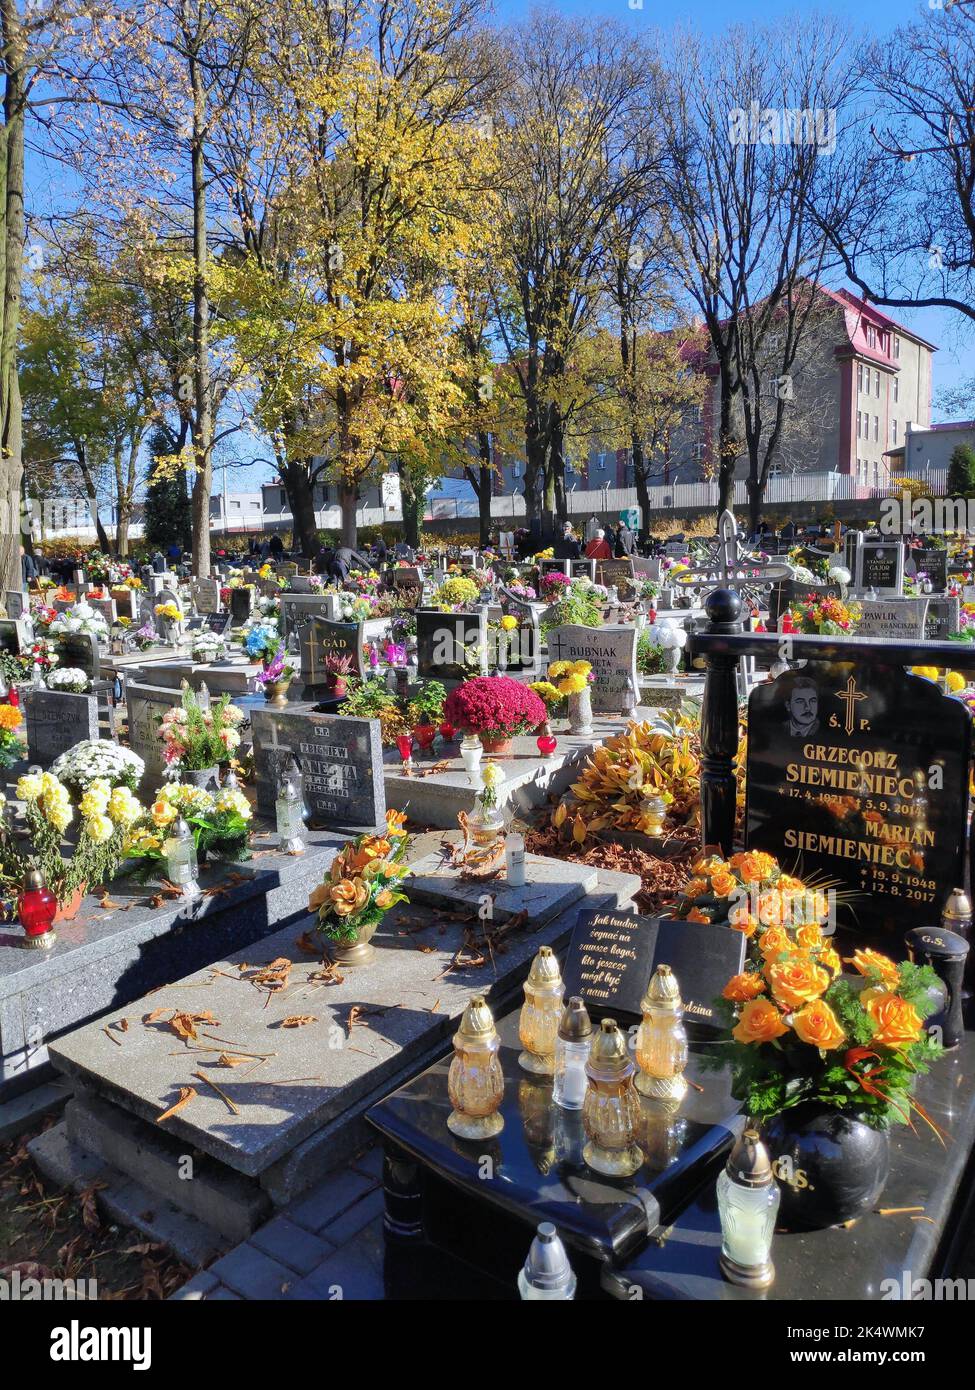 BYTOM, POLONIA - 1 DE NOVIEMBRE de 2021: Vista otoñal de tumbas y velas en un cementerio durante la semana anterior al Día de Todos los Santos (Wszystkich Swietych) en Polonia. Foto de stock